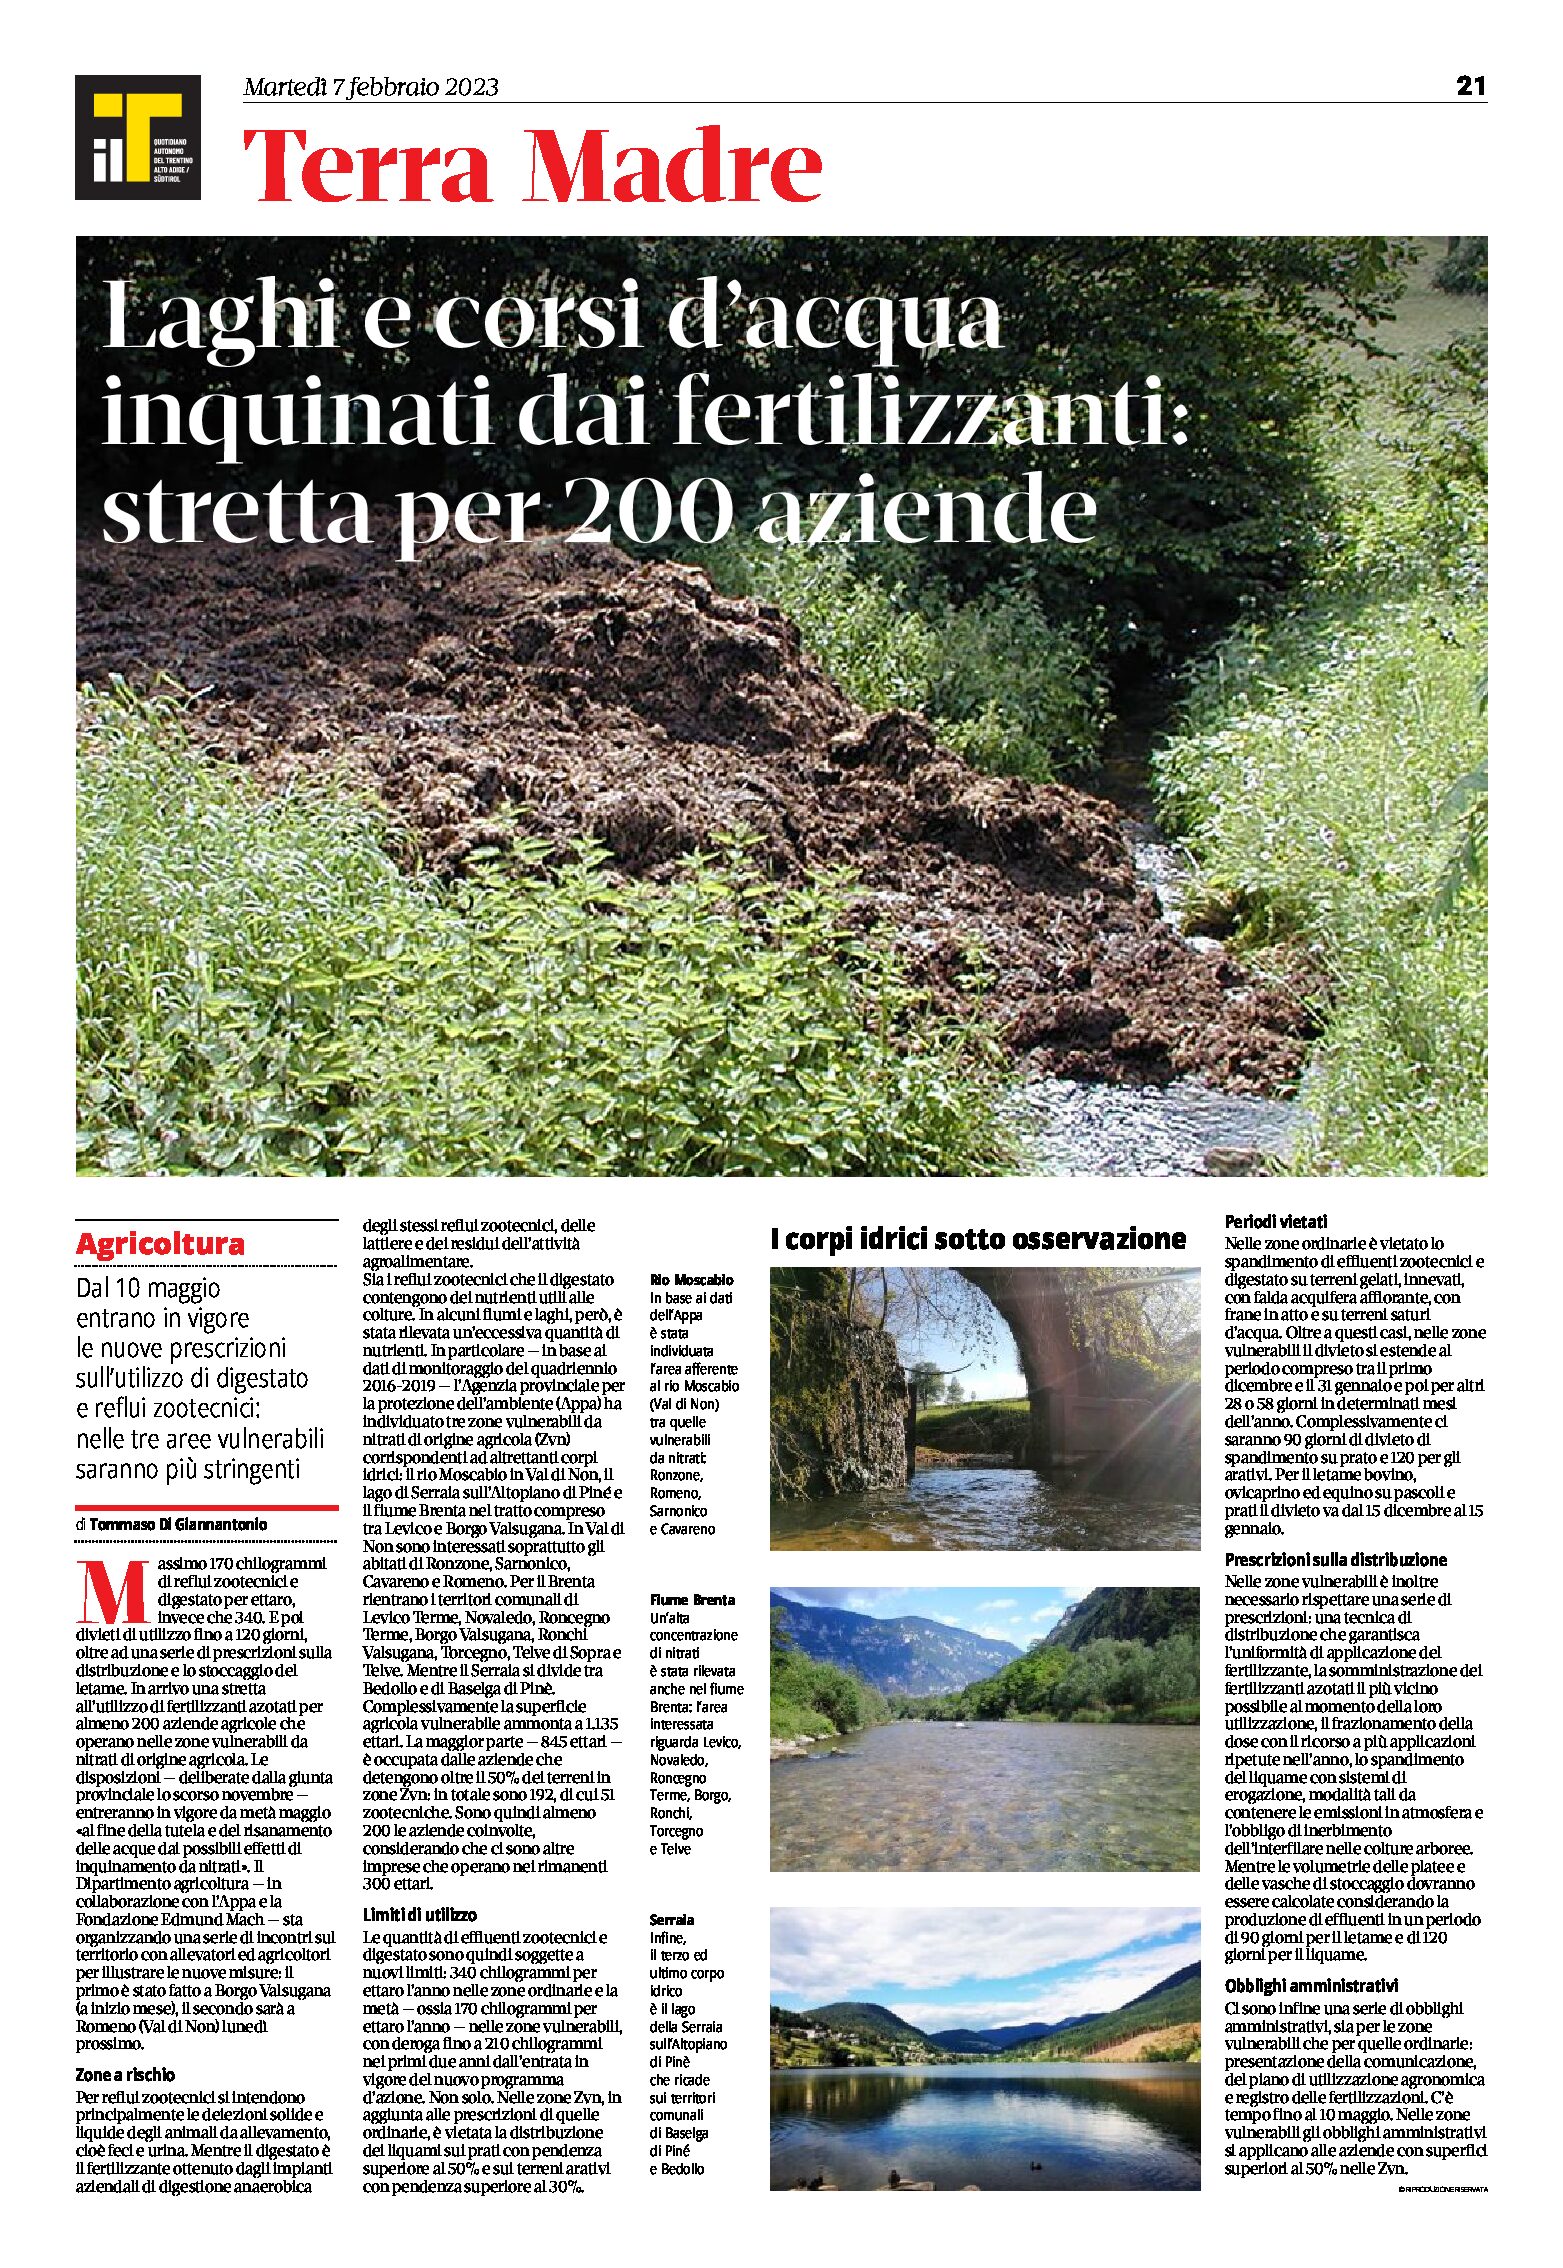 Trentino: laghi e corsi d’acqua inquinati dai fertilizzanti. Stretta per 200 aziende